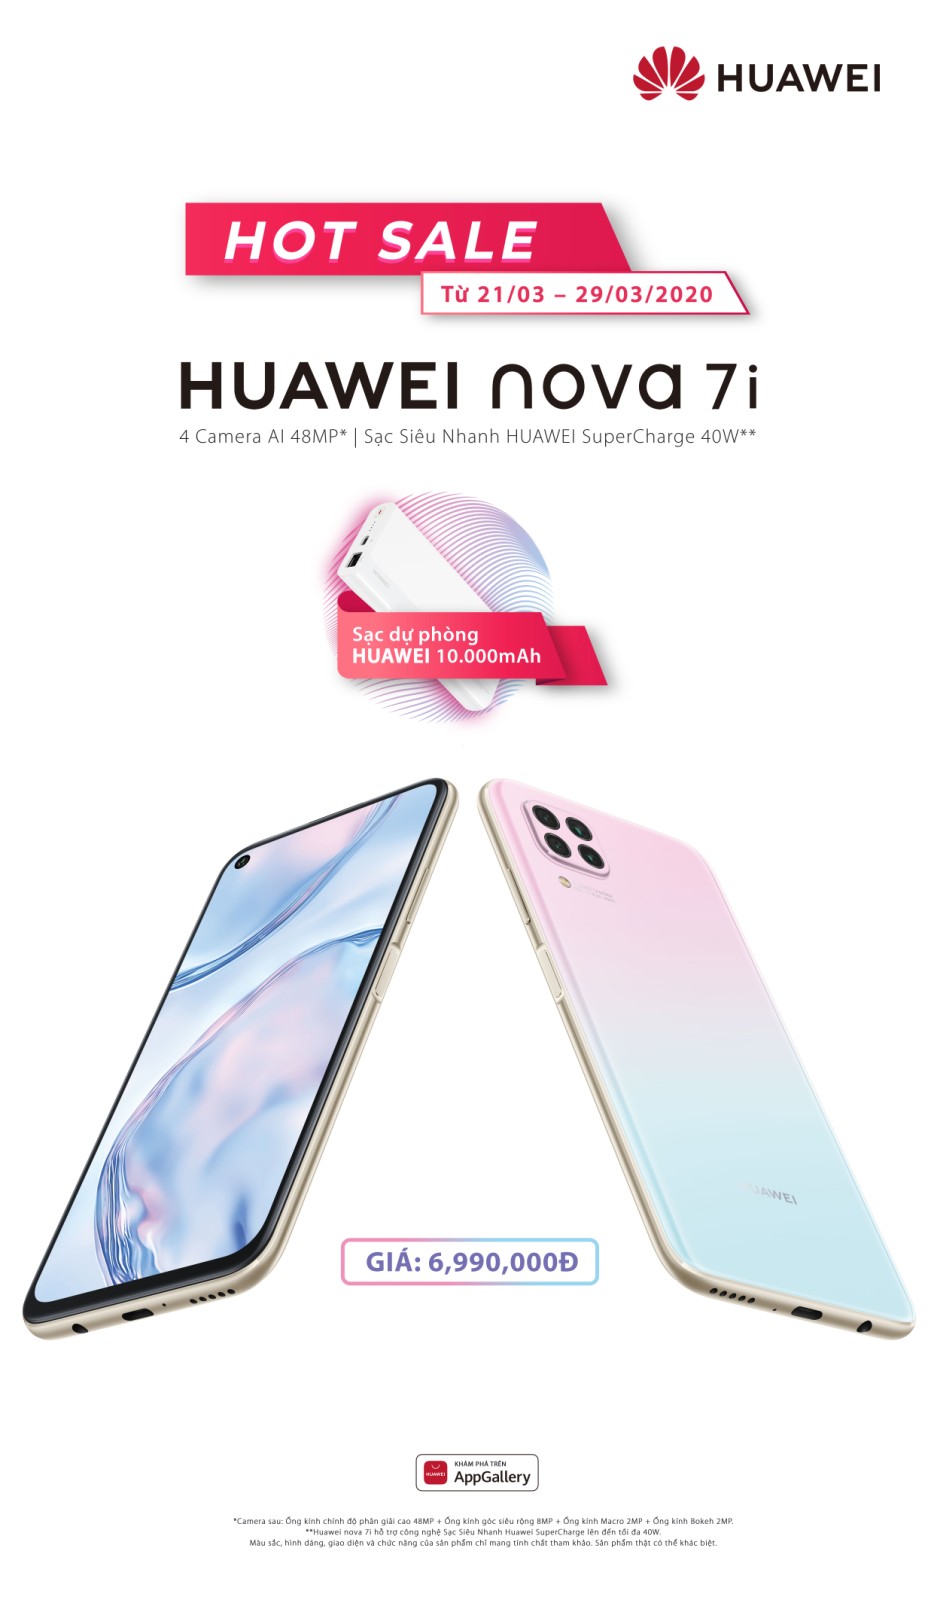 Huawei nova 7i chính thức ra mắt có giá 6,99 triệu đồng tại Việt Nam - 6